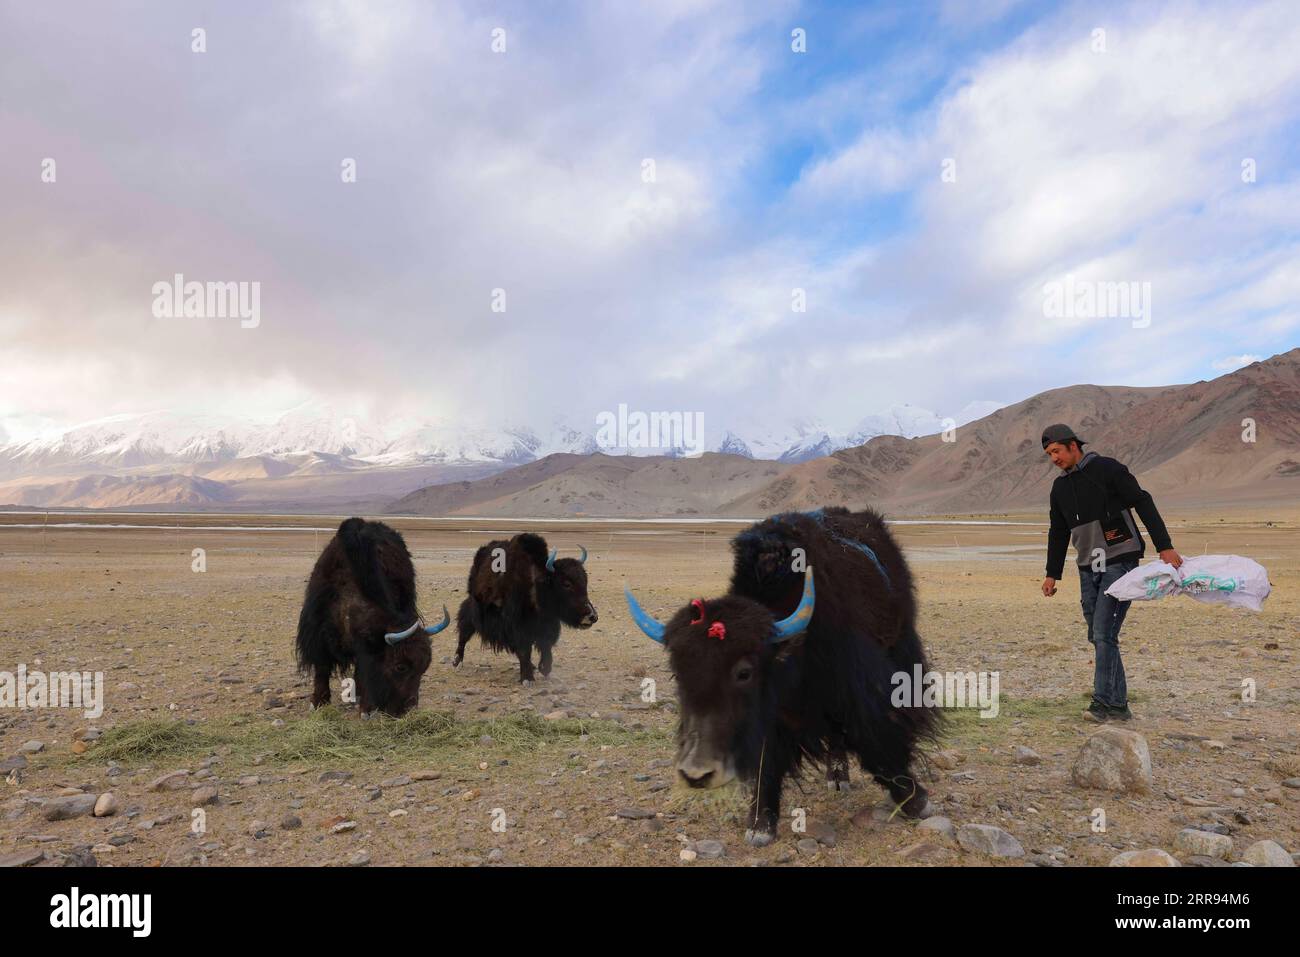 210528 -- URUMQI, 28 maggio 2021 -- Bikmirza Turdil alimenta gli yak nel villaggio di Subax della contea di Akto, regione autonoma di Xinjiang Uygur della Cina nordoccidentale, 14 maggio 2021. Bikmirza, un allevatore di 24 anni, nacque e crebbe ai piedi del Muztagh Ata, un picco con un'altitudine di oltre 7.500 metri, nella regione autonoma di Uygur dello Xinjiang Pamir in Cina. Ha iniziato a lavorare come guida aiutando gli scalatori a trasportare attrezzature e provviste all'età di 18 anni. Scalare il Muztagh Ata, un simbolo di coraggio, è anche considerato come la cerimonia di raggiungimento della maggiore età per i giovani locali. Nel villaggio di Subax dove Bikmir Foto Stock